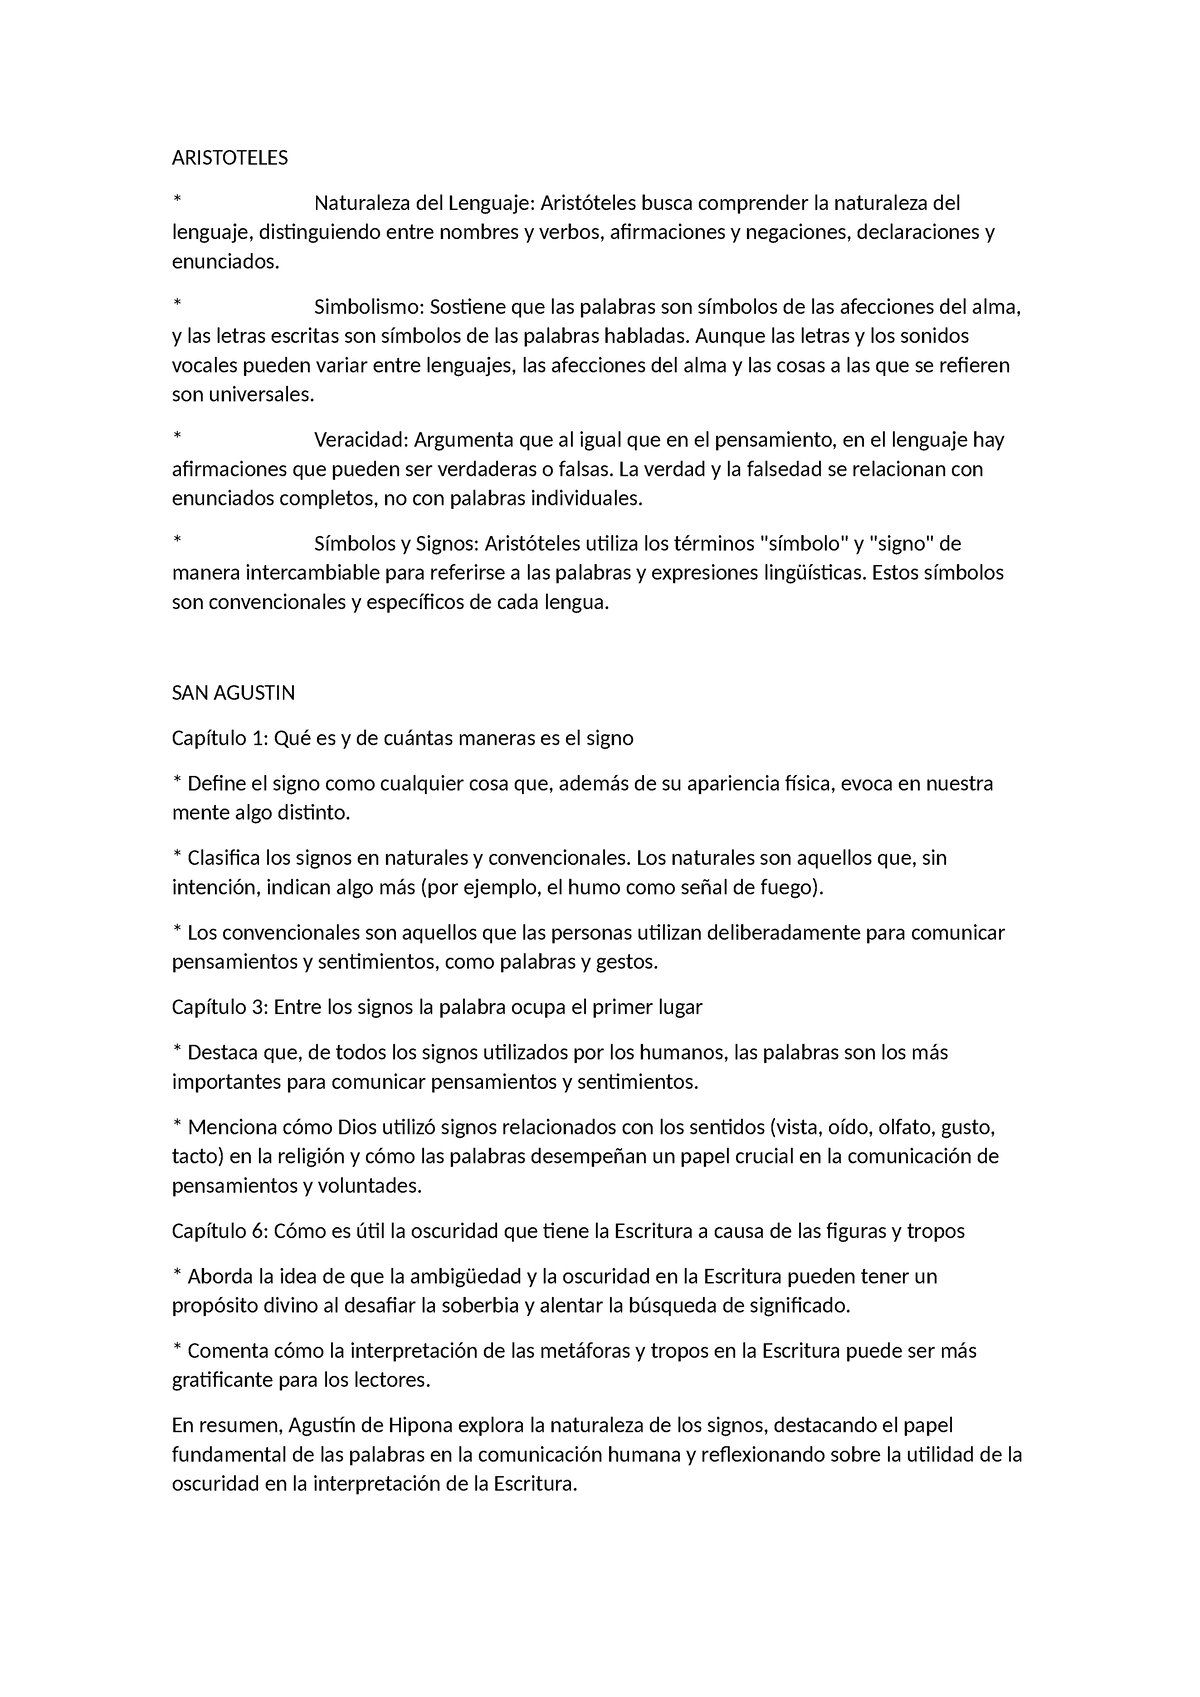 Final semiologia - Resumen Semiología - ARISTOTELES Naturaleza del ...